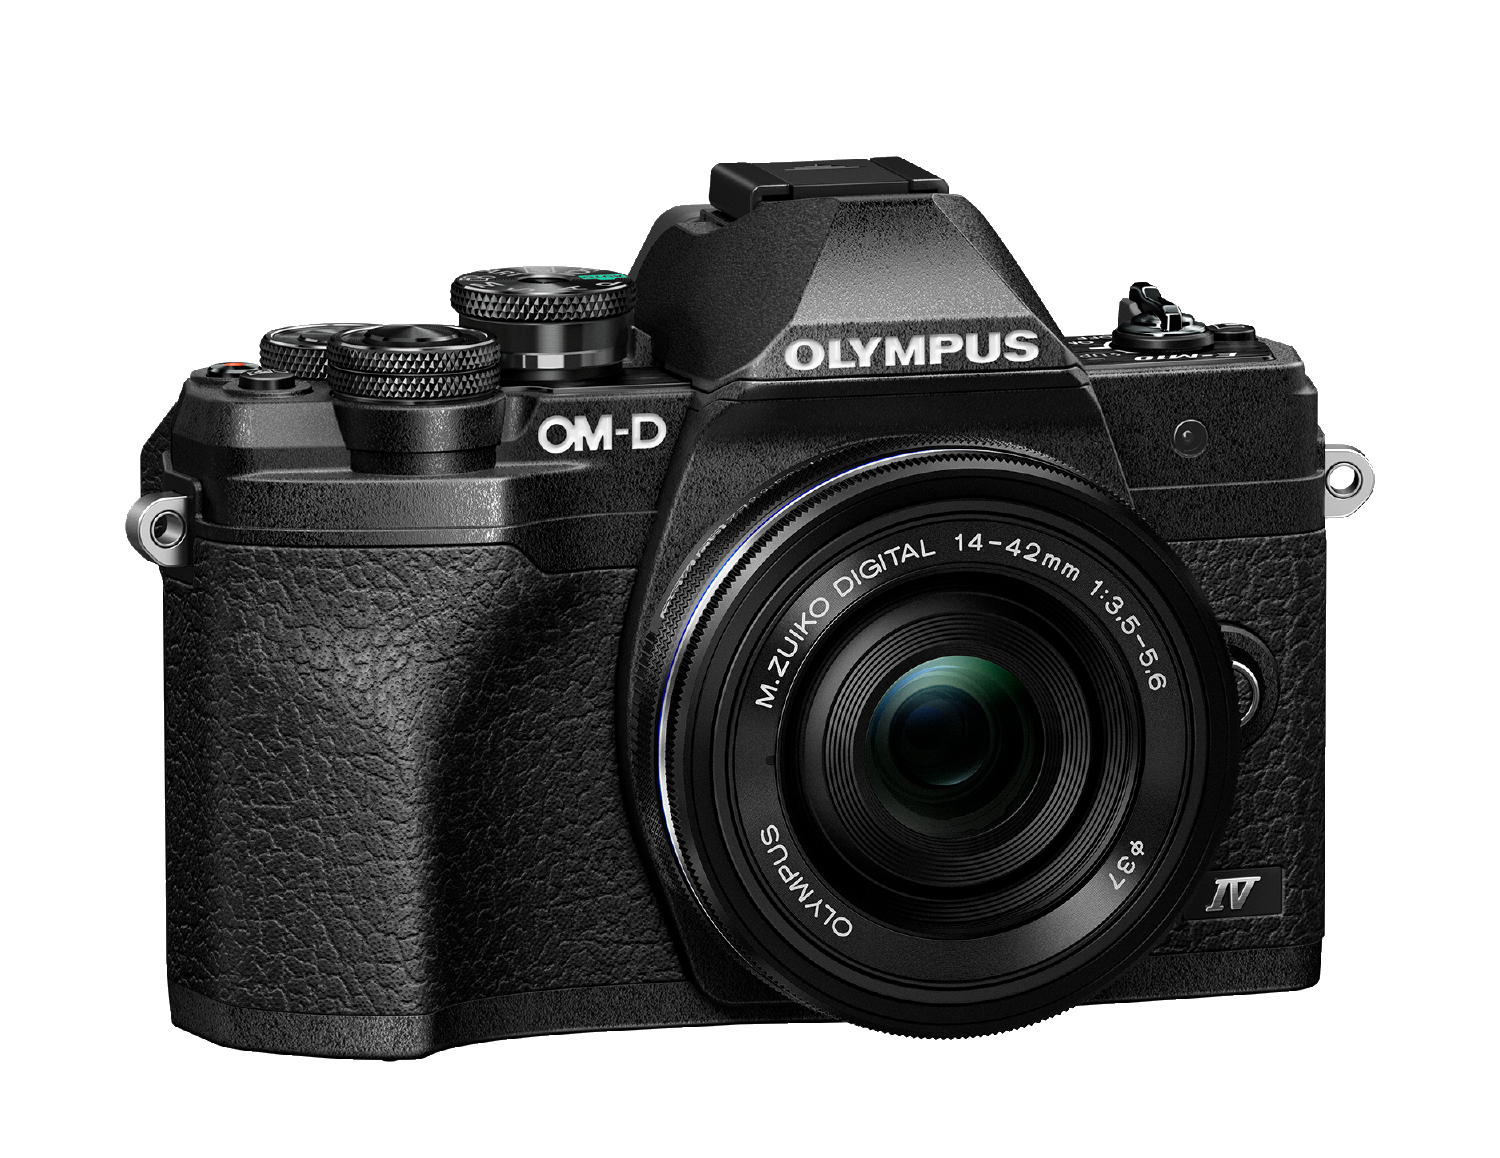 OM-D OLYMPUS 7,6 Pancake Mark Display kompakte E-M10 14-42mm F3.5-5.6, Selfie Kit, Touchscreen, cm Systemkamera, IV WLAN